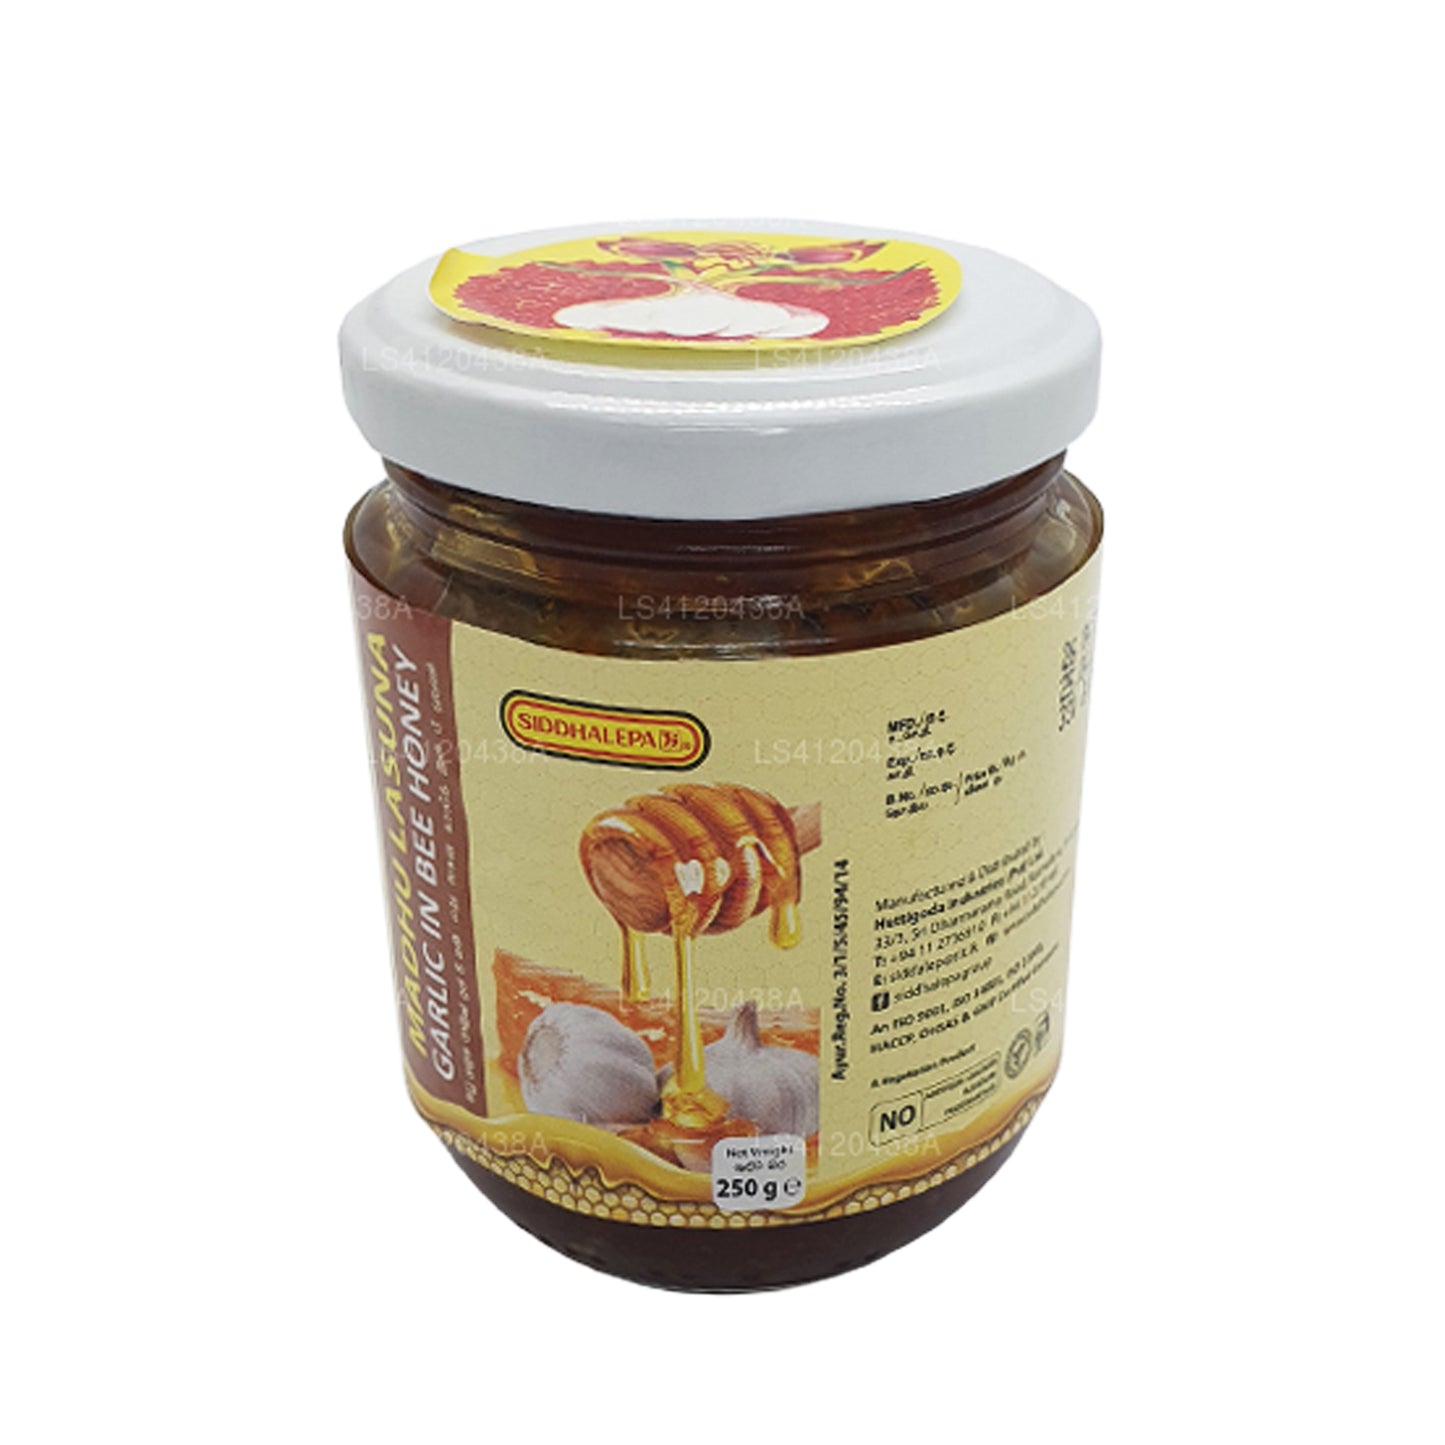 Siddhalepa Madhu Lasuna 蜂蜜中的大蒜 (250 克)